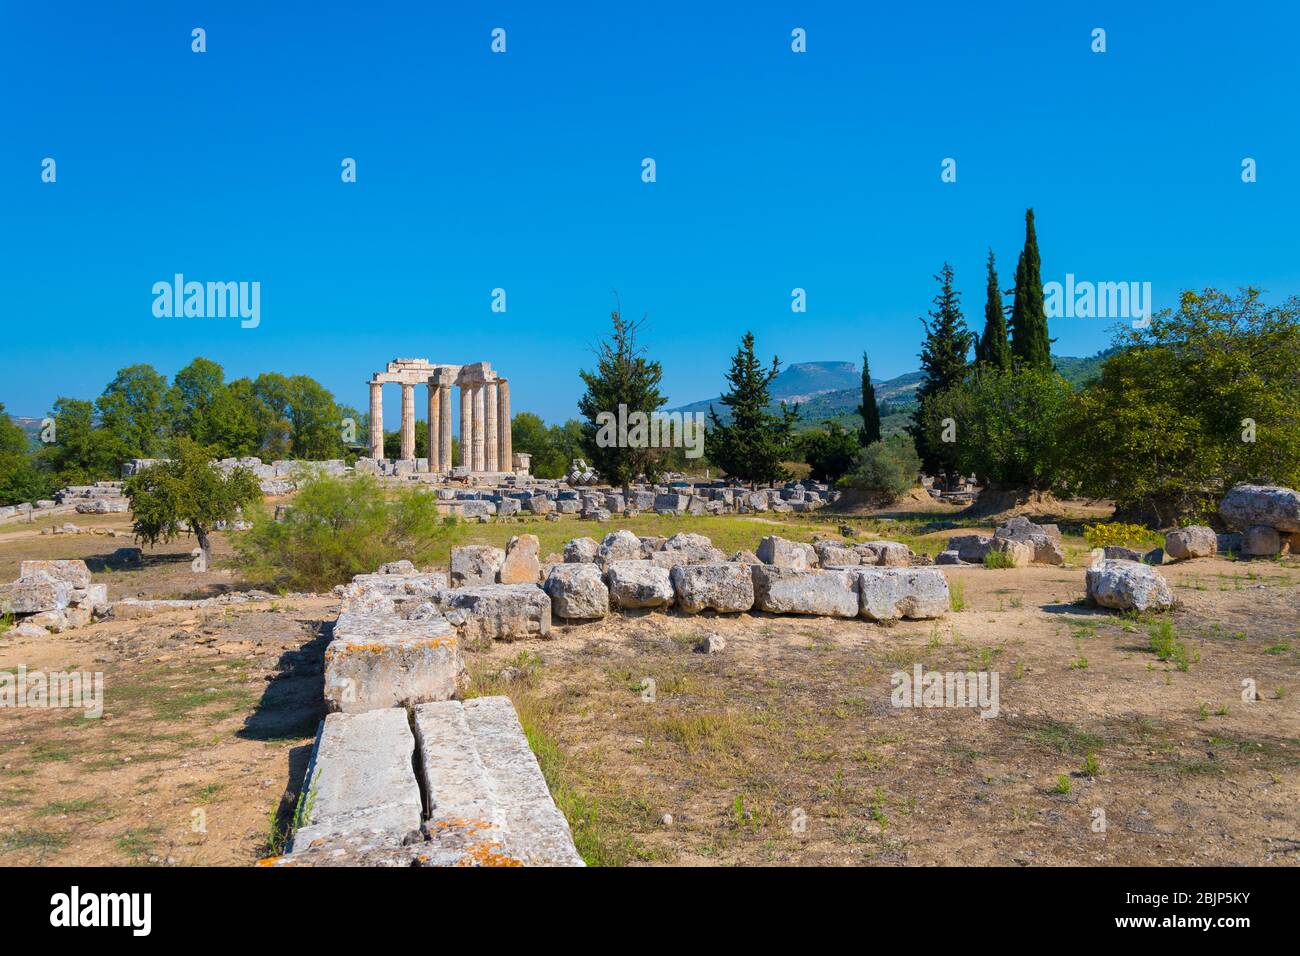 Tempio di Zeus nel sito archeologico di Nemea in Grecia. Ha tre stili architettonici: dorico, ionico e corinzio Foto Stock